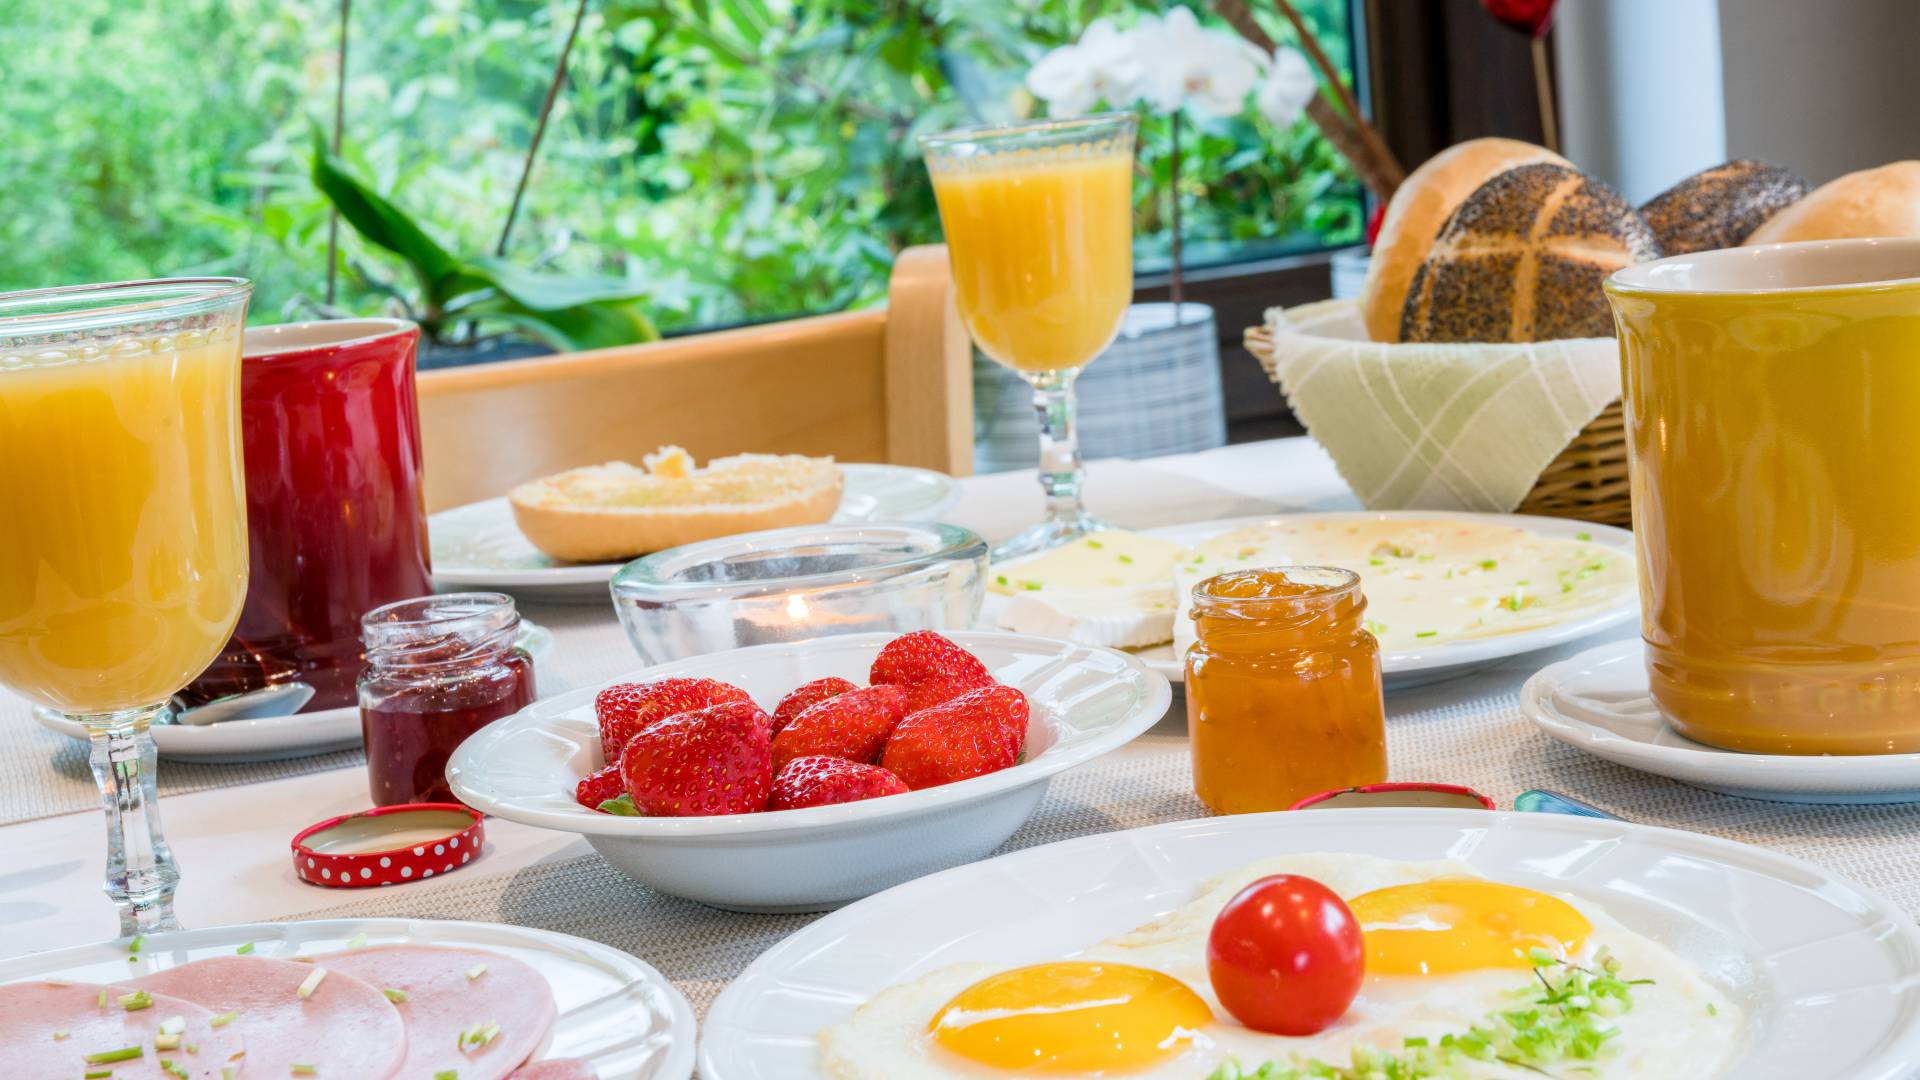 Gedeckte Frühstück mit Saft, Erdbeeren, Spiegelei, Wurst, Käse und Brötchen, Hotel Haus Nussbaum in Ratingen